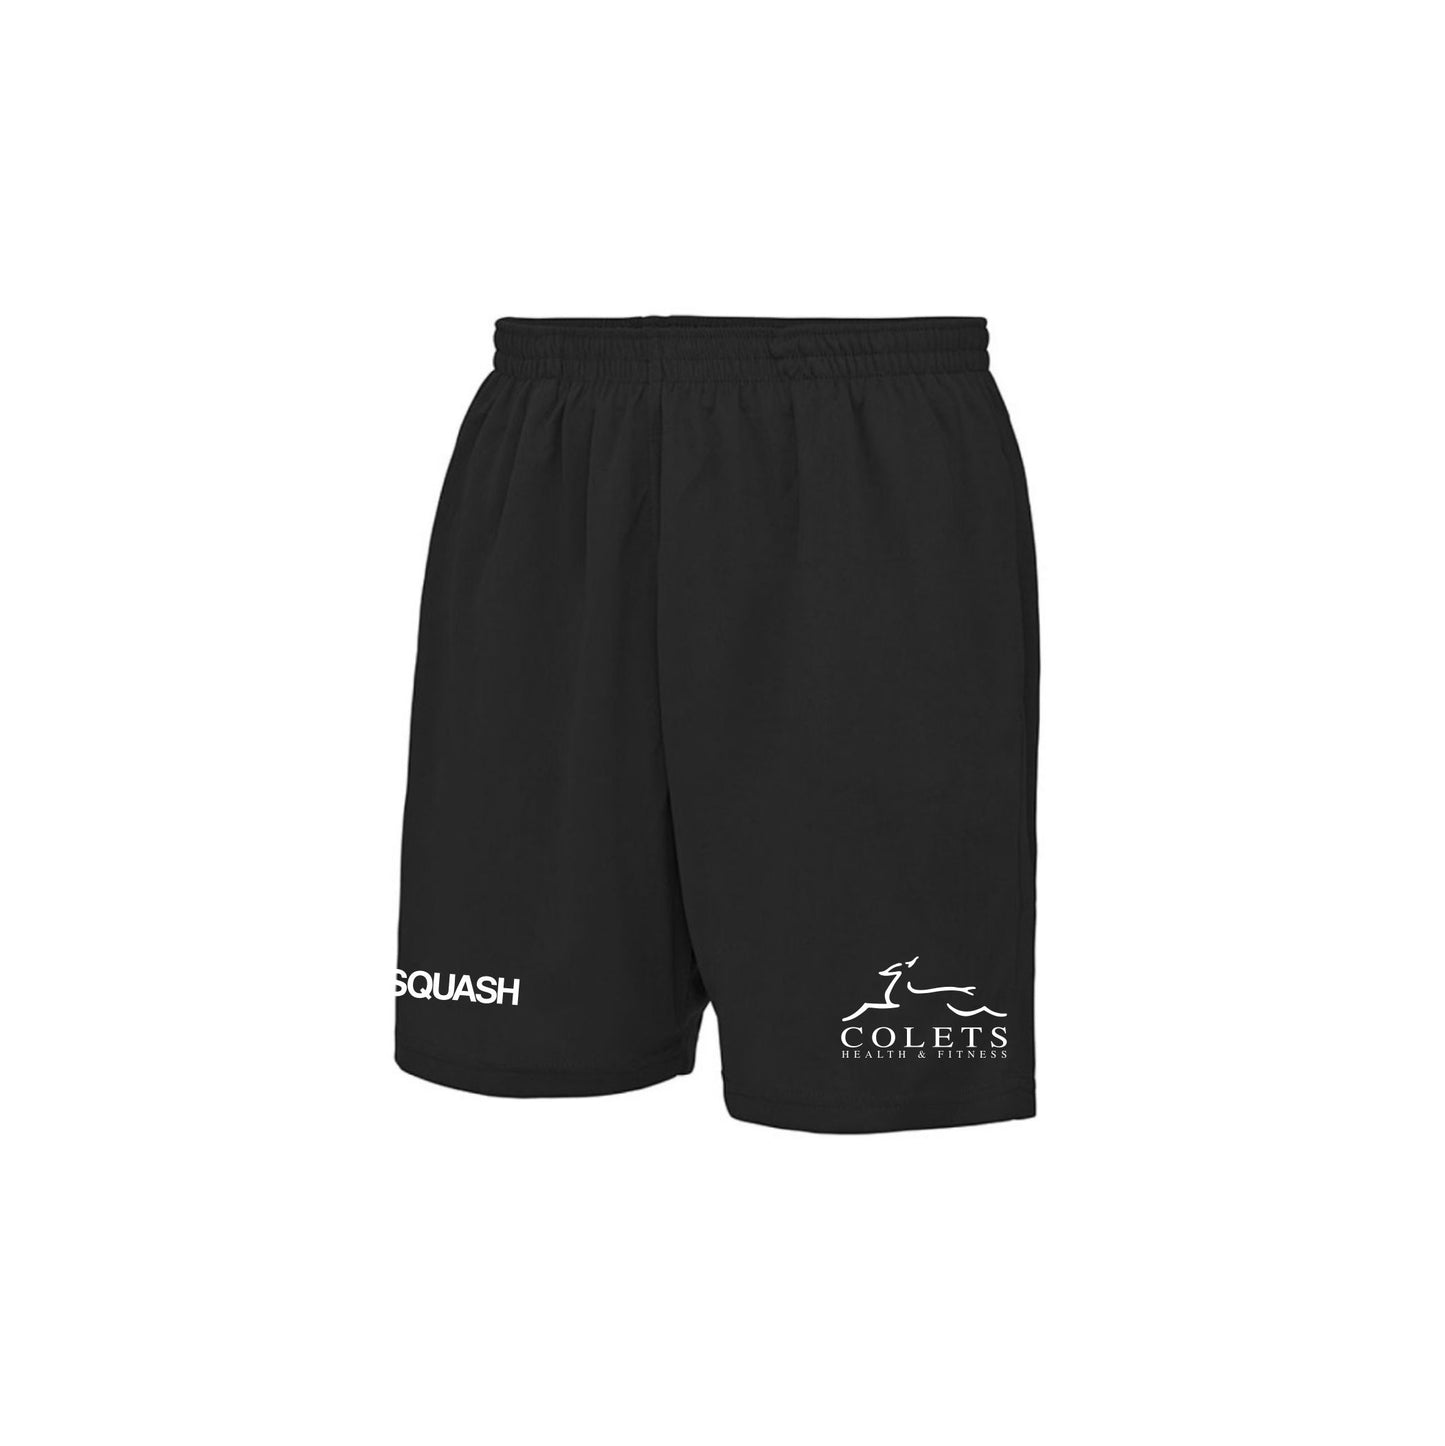 Colets Squash Action Shorts